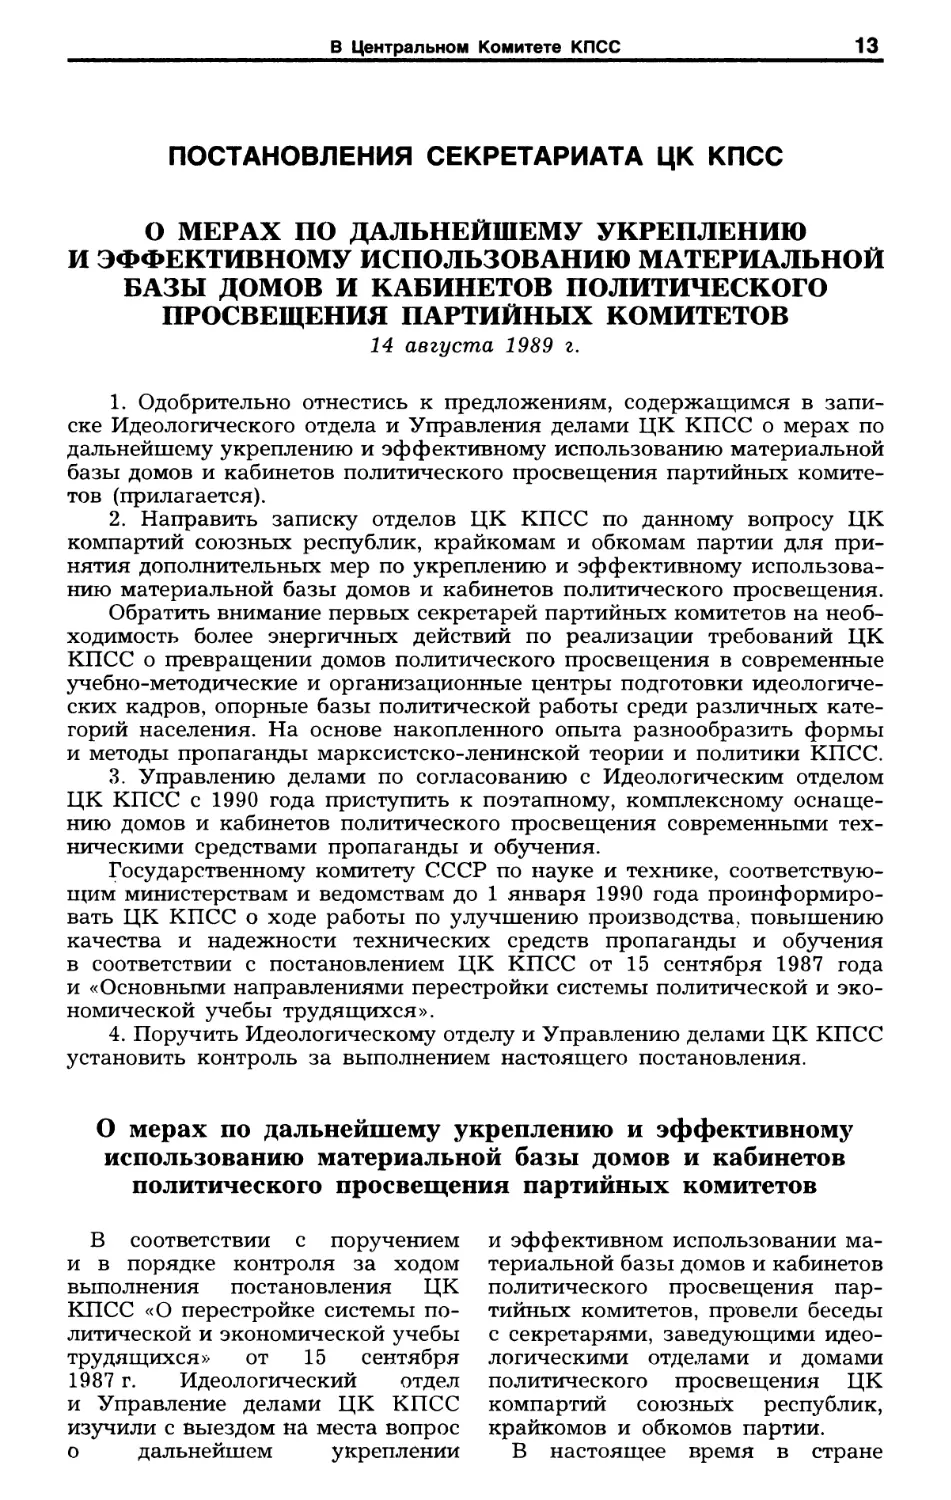 Постановления Секретариата ЦК КПСС